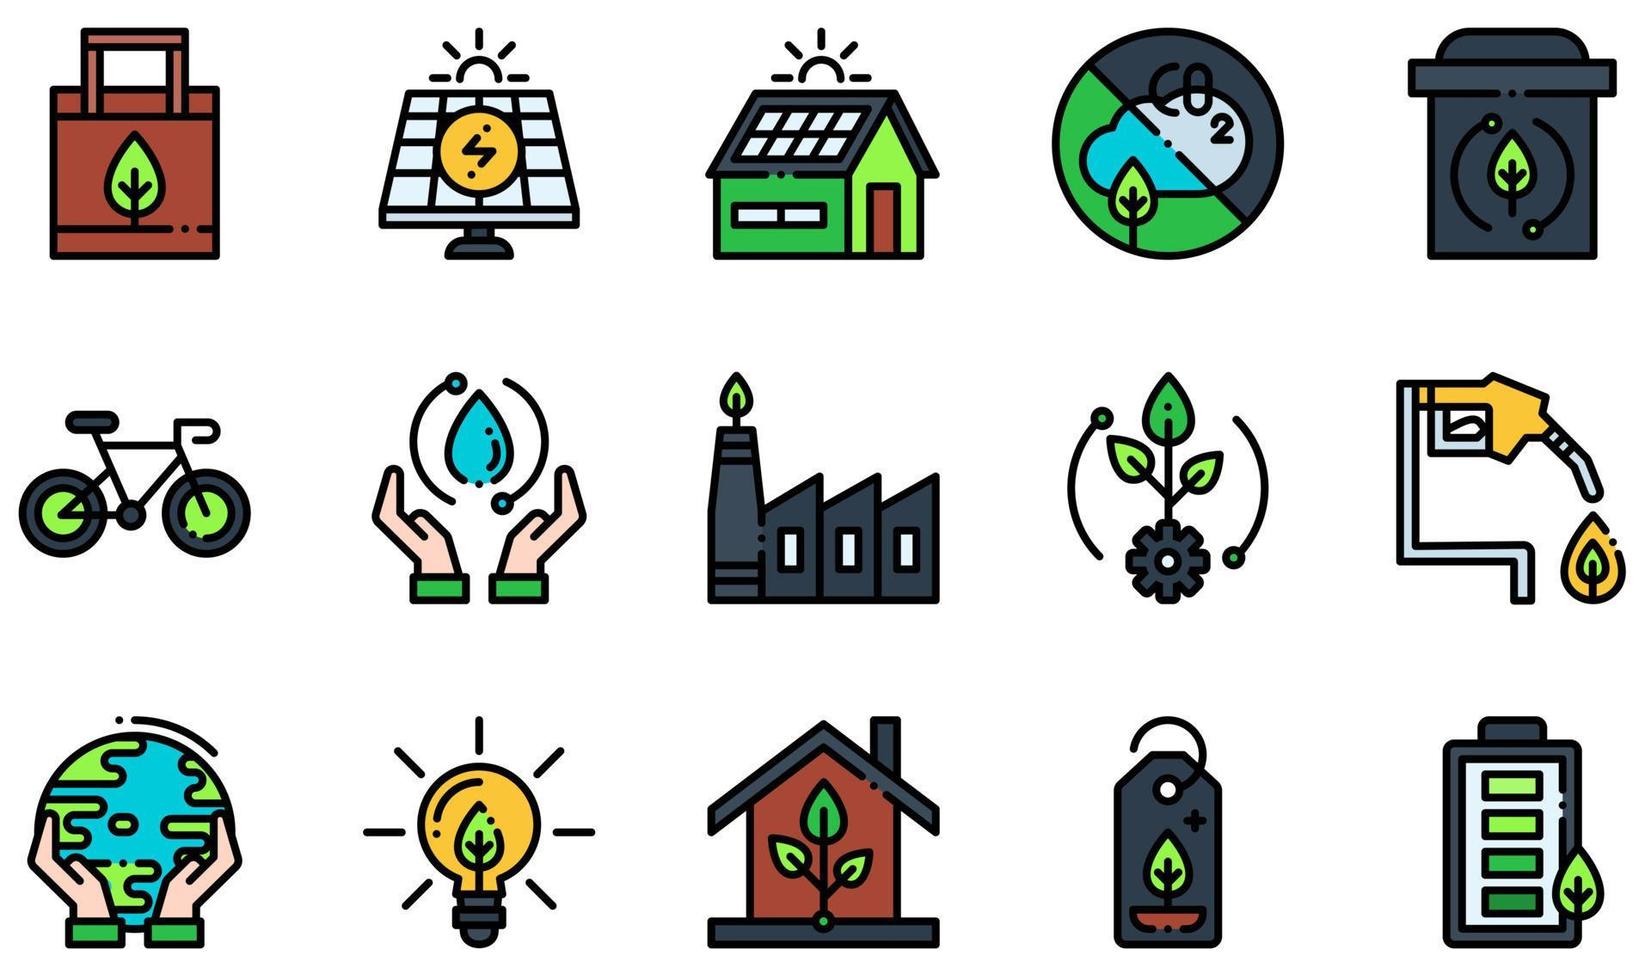 ensemble d'icônes vectorielles liées à l'écologie. contient des icônes telles que sac écologique, panneau solaire, zéro émission, corbeille, écosystème, protection de la terre et plus encore. vecteur